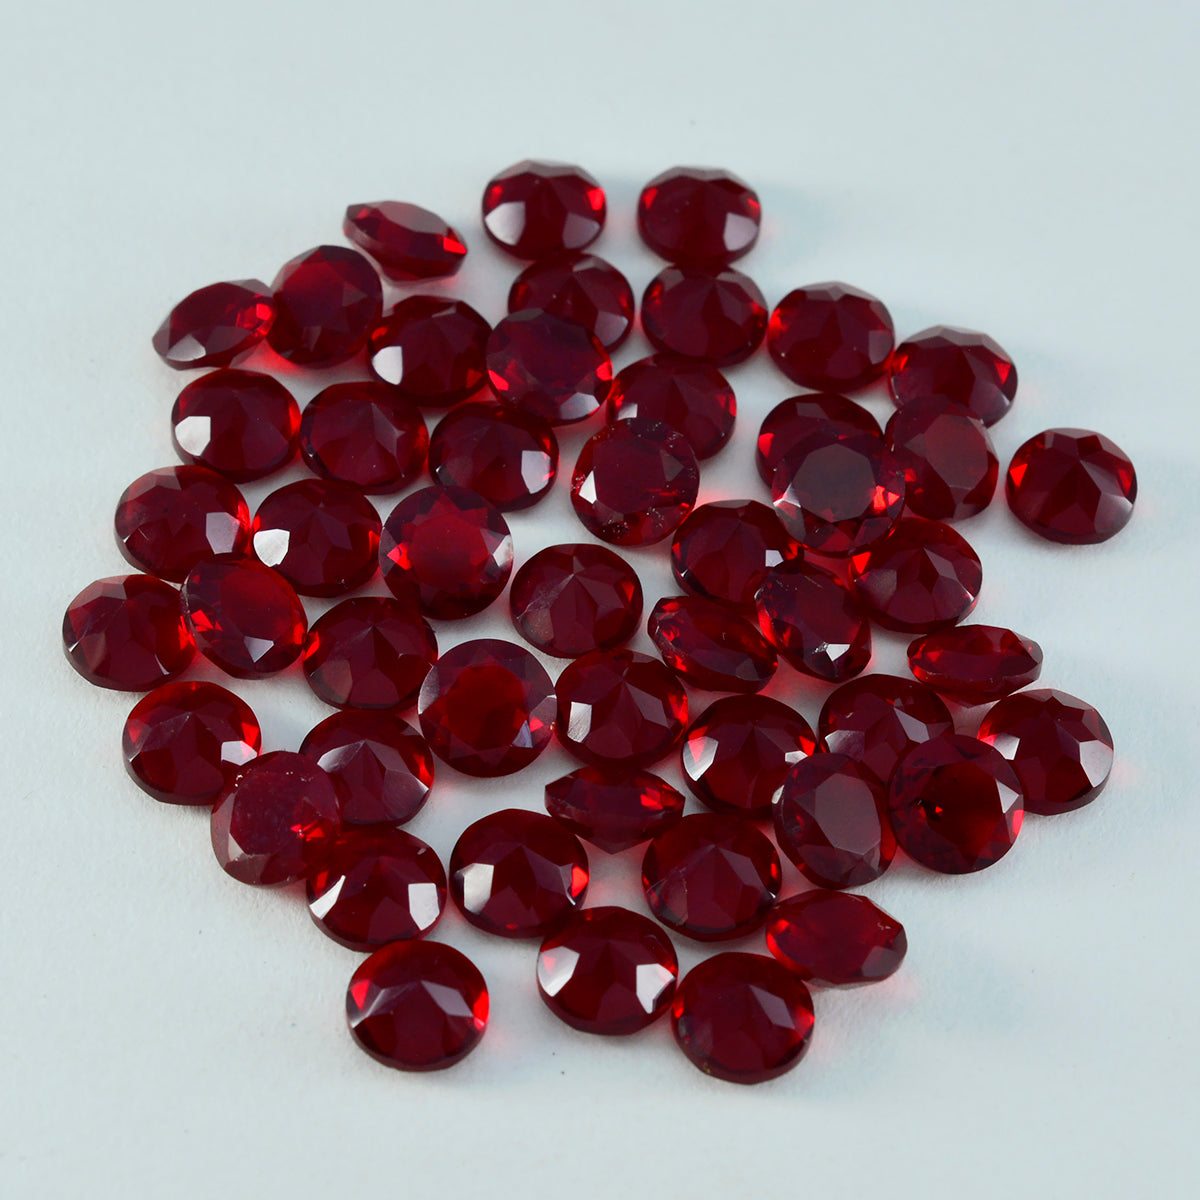 riyogems 1st röd rubin cz fasetterad 6x6 mm rund form lös pärla av god kvalitet